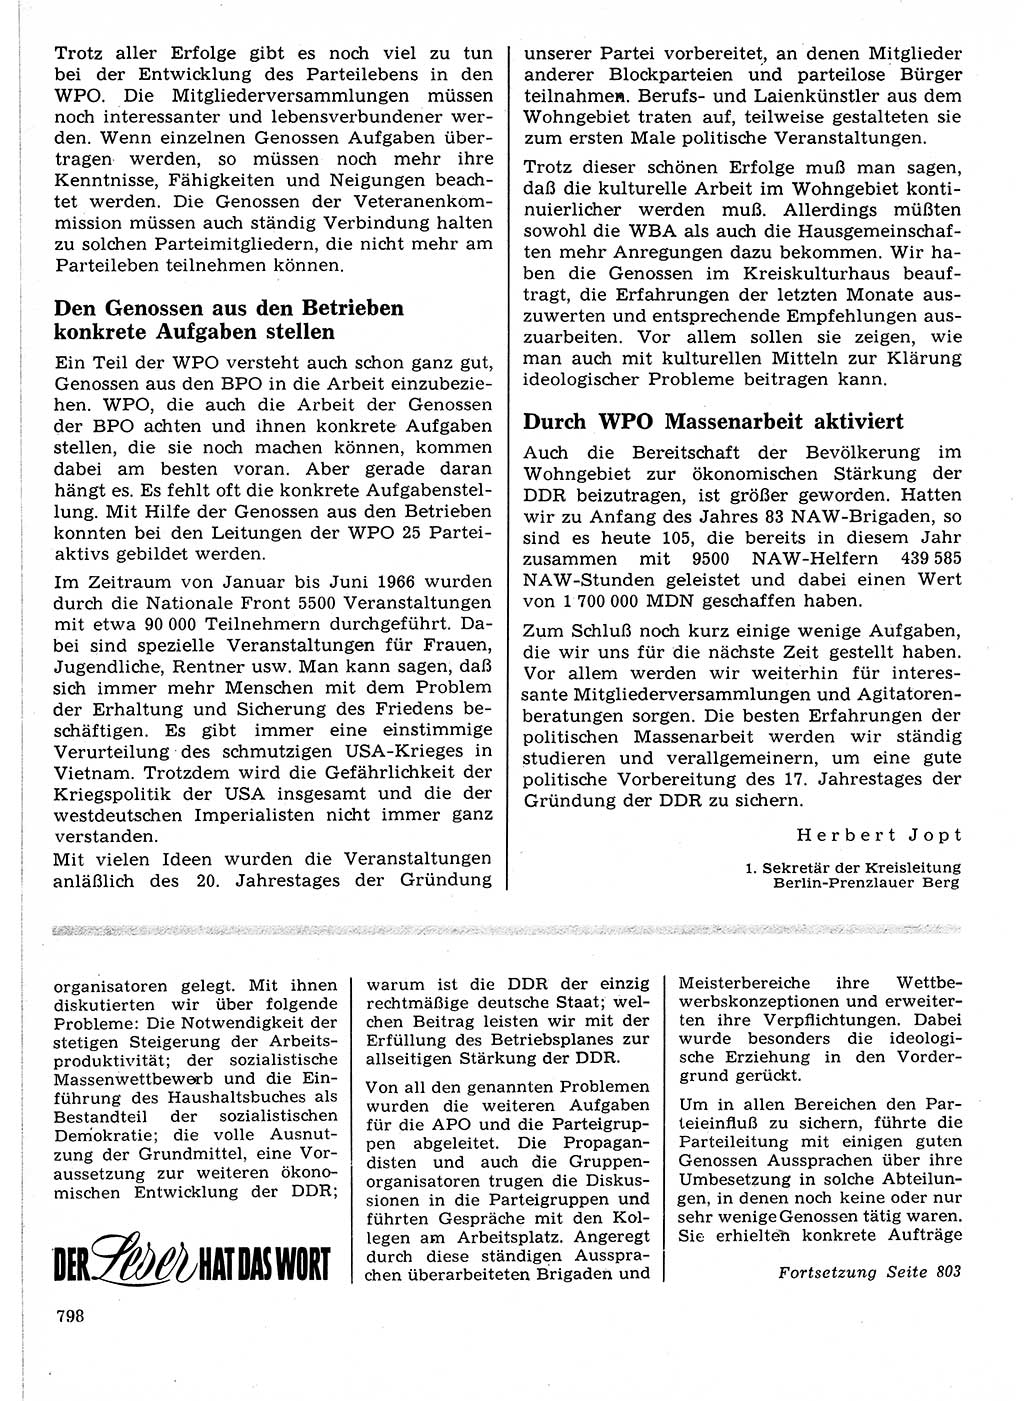 Neuer Weg (NW), Organ des Zentralkomitees (ZK) der SED (Sozialistische Einheitspartei Deutschlands) für Fragen des Parteilebens, 21. Jahrgang [Deutsche Demokratische Republik (DDR)] 1966, Seite 798 (NW ZK SED DDR 1966, S. 798)